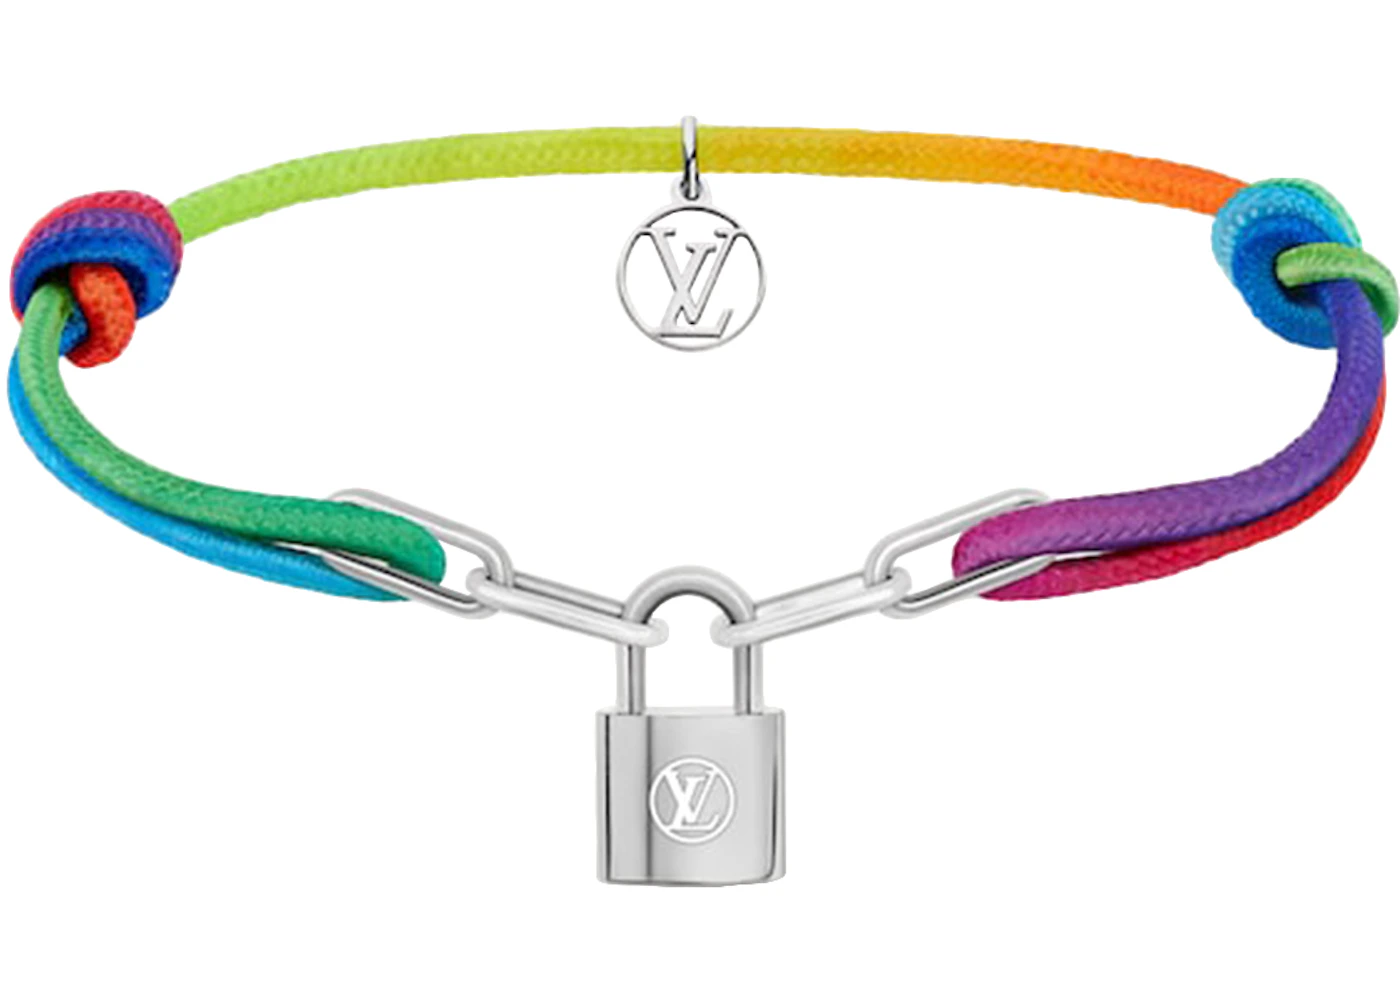 Louis Vuitton x Virgil Abloh Silver Lockit Bracelet Rainbow